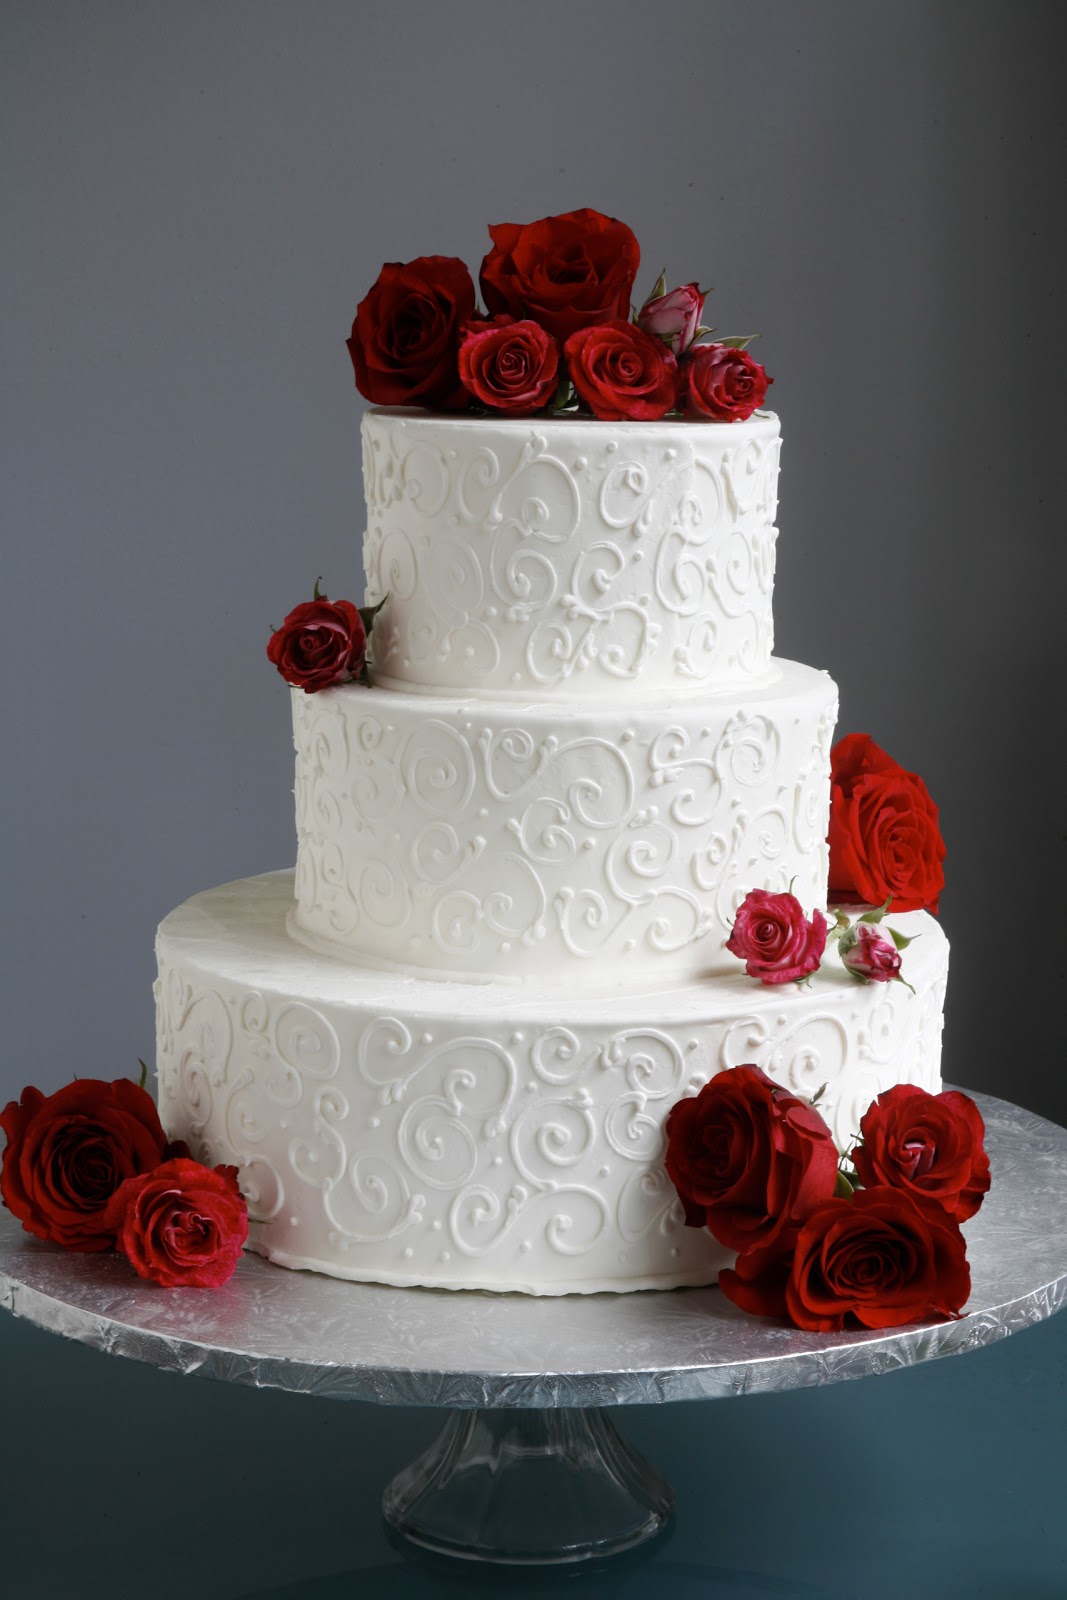 Pin By Allison Daub On My Wedding Ideas Wedding Cake Roses Wedding Cake Red Wedding Cakes